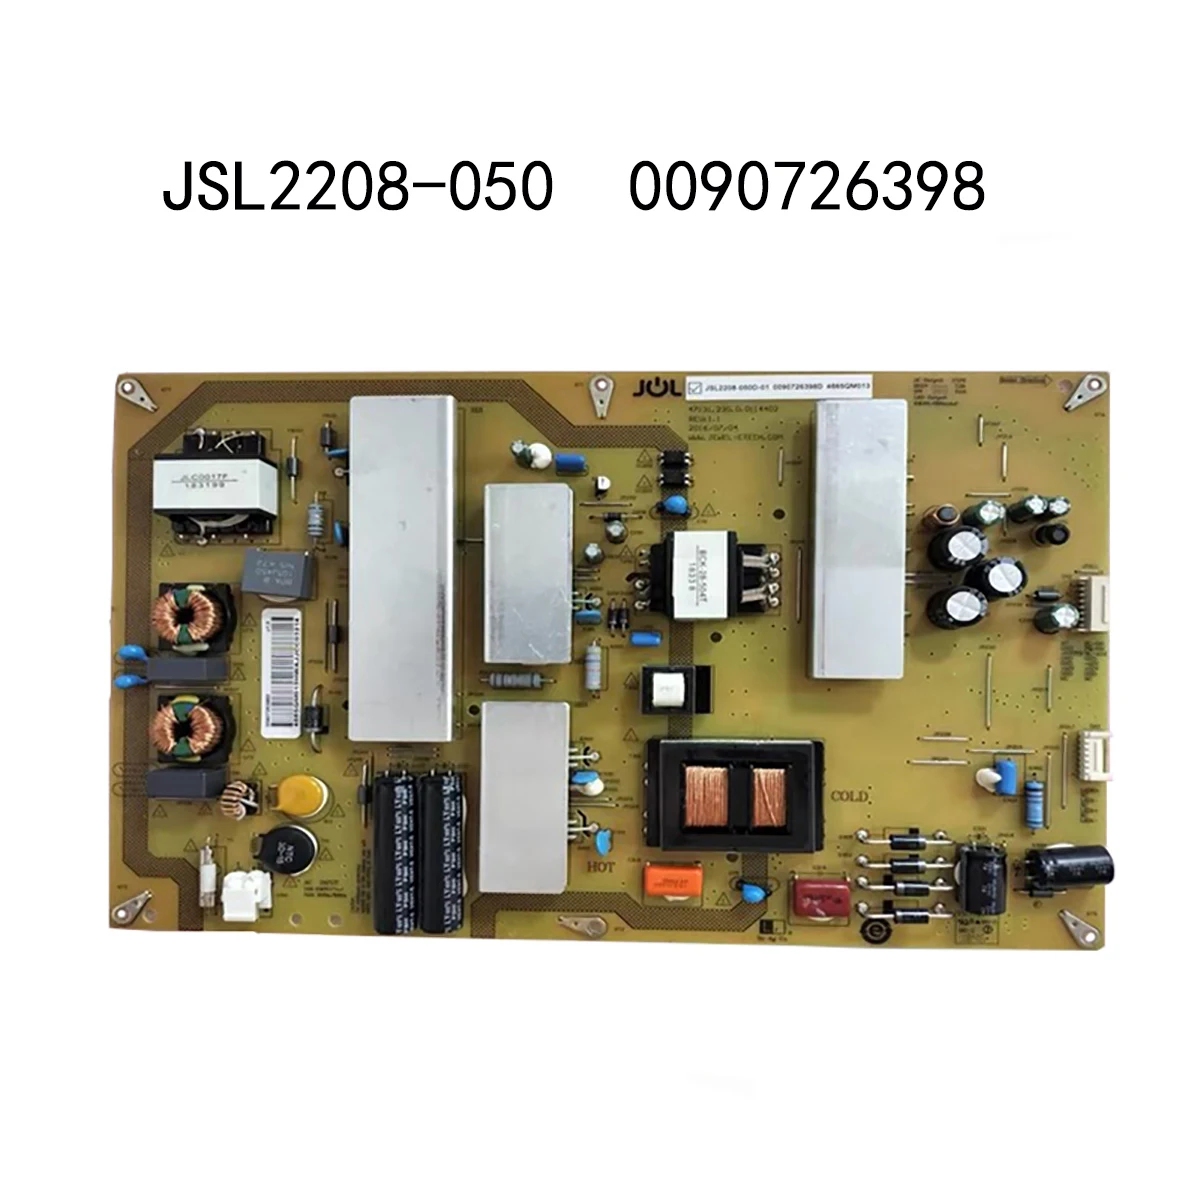 New JSL2208-050 0090726398 Power Supply TV Power Card Original Equipment Power Support Board For TV JSL2208 050 0090726398